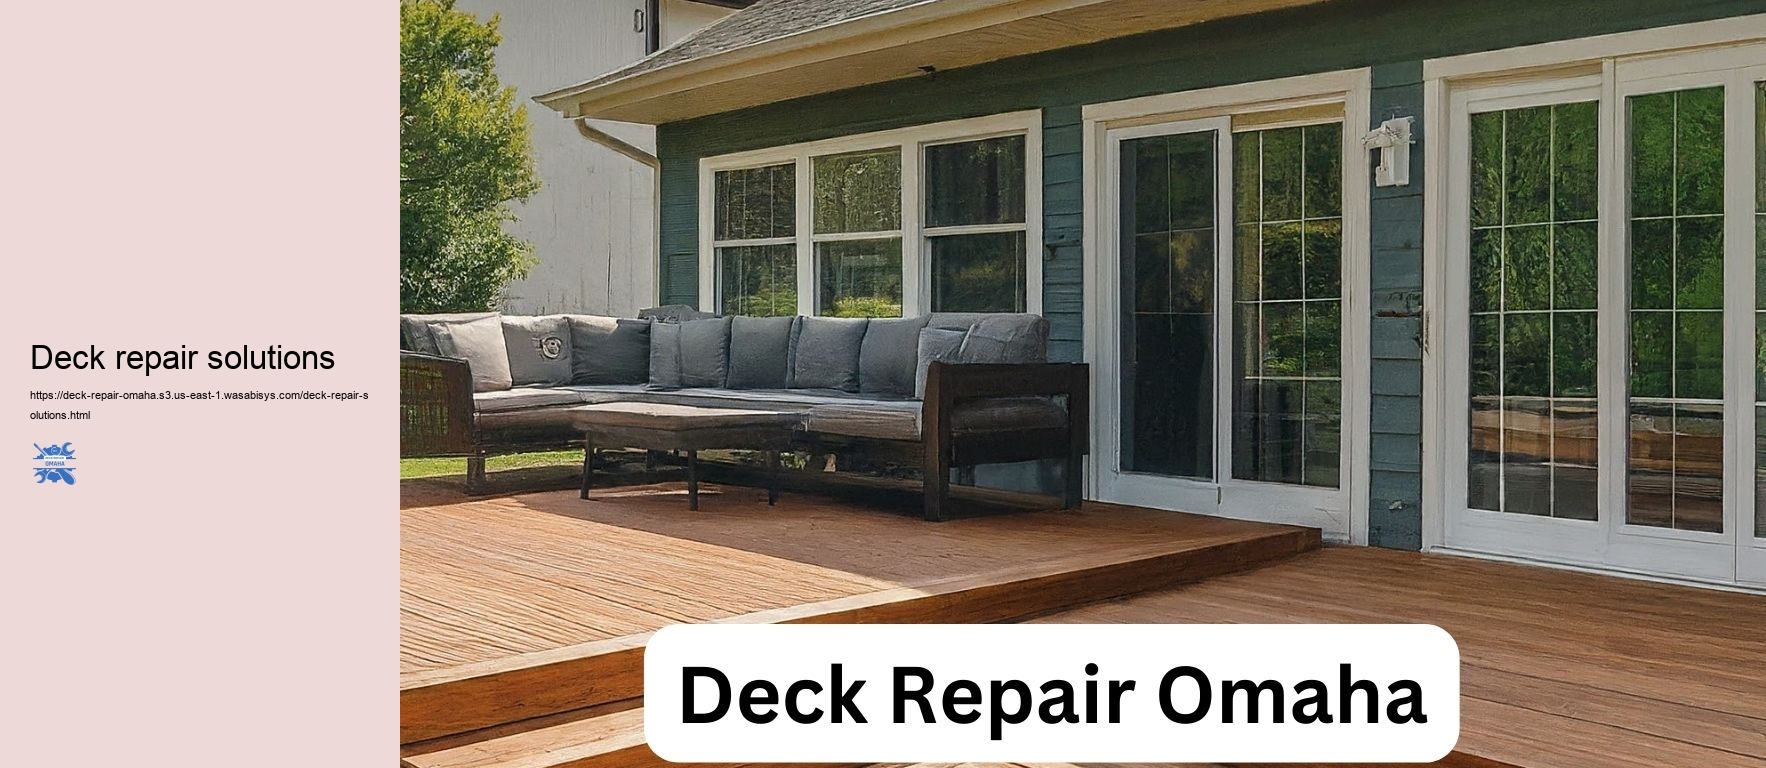 Deck repair solutions